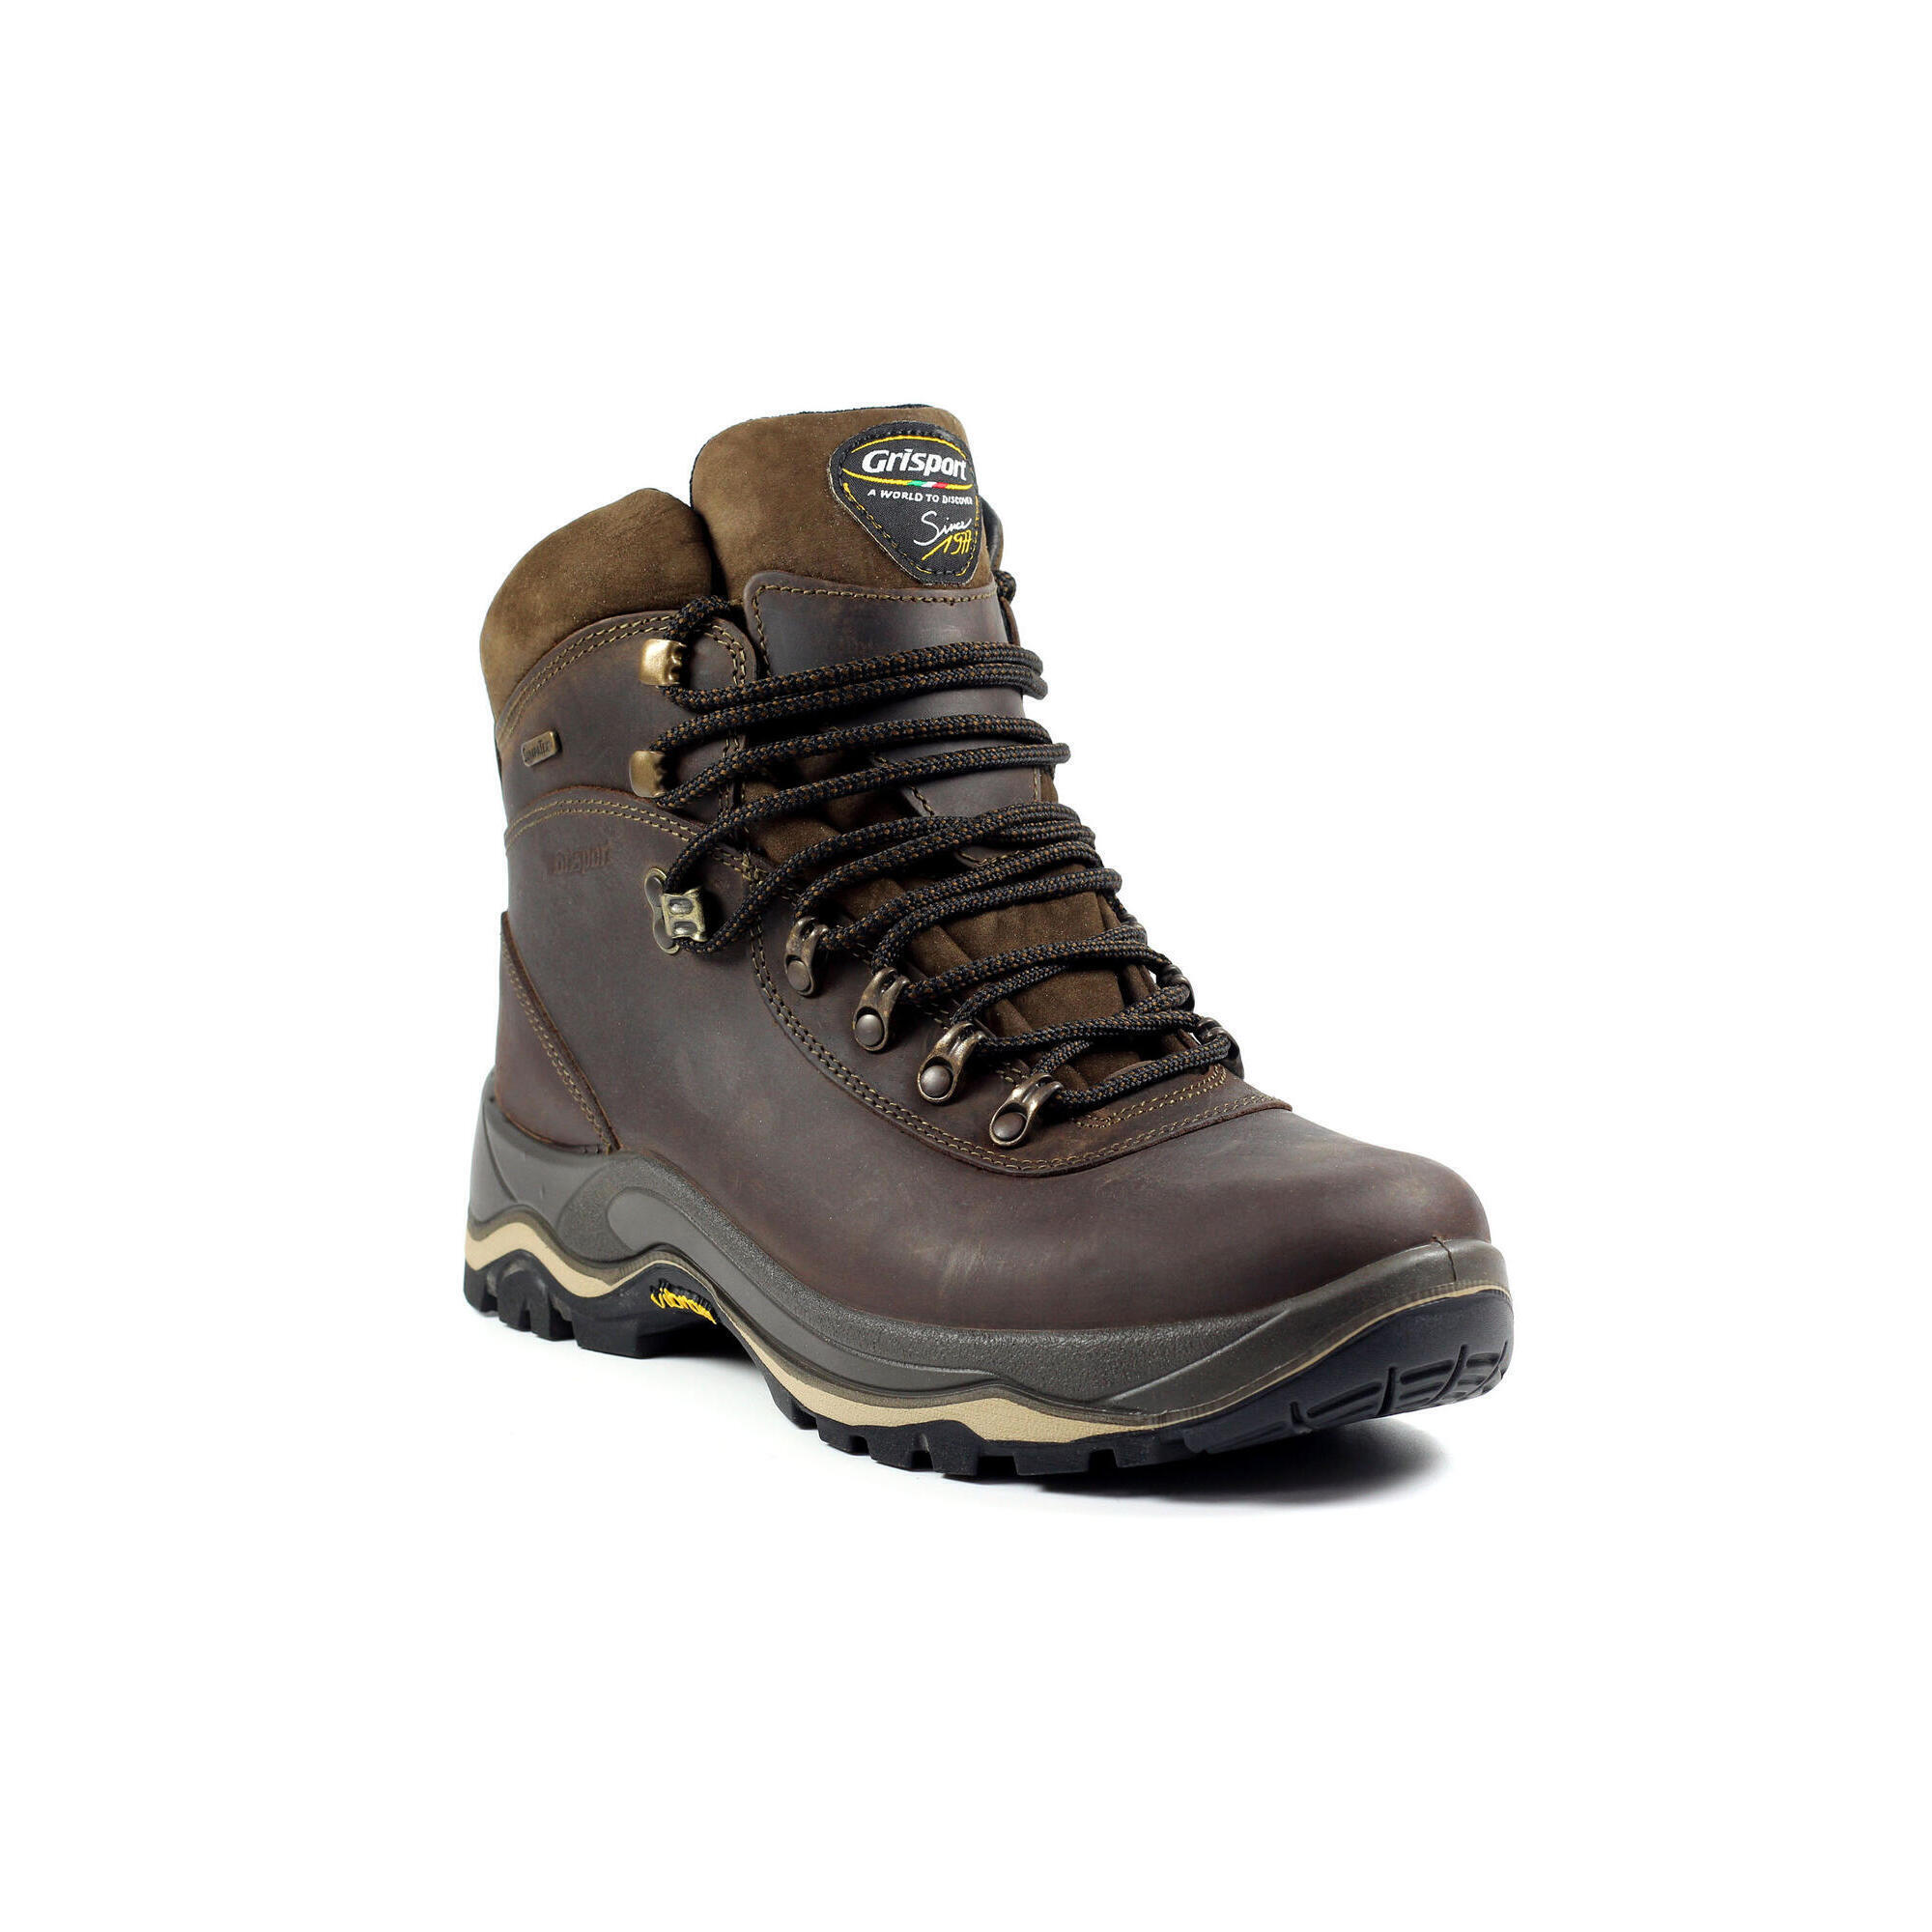 Evolution Brown Waterproof Hiking Boot 1/5